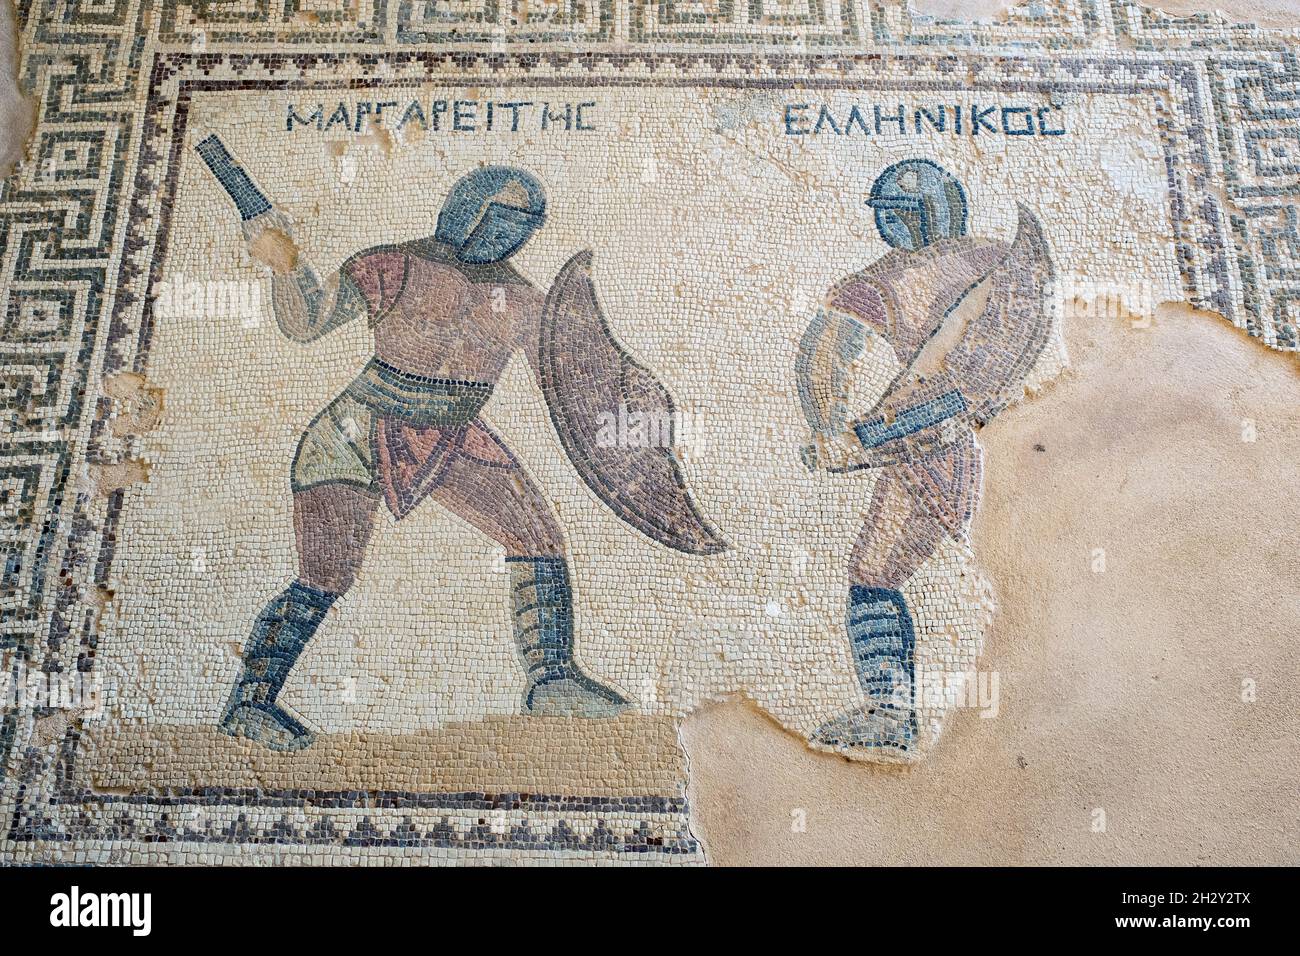 Gladiator Mosaik im Gladiatorenhaus, an der archäologischen Stätte von  Kourion, Republik Zypern Stockfotografie - Alamy